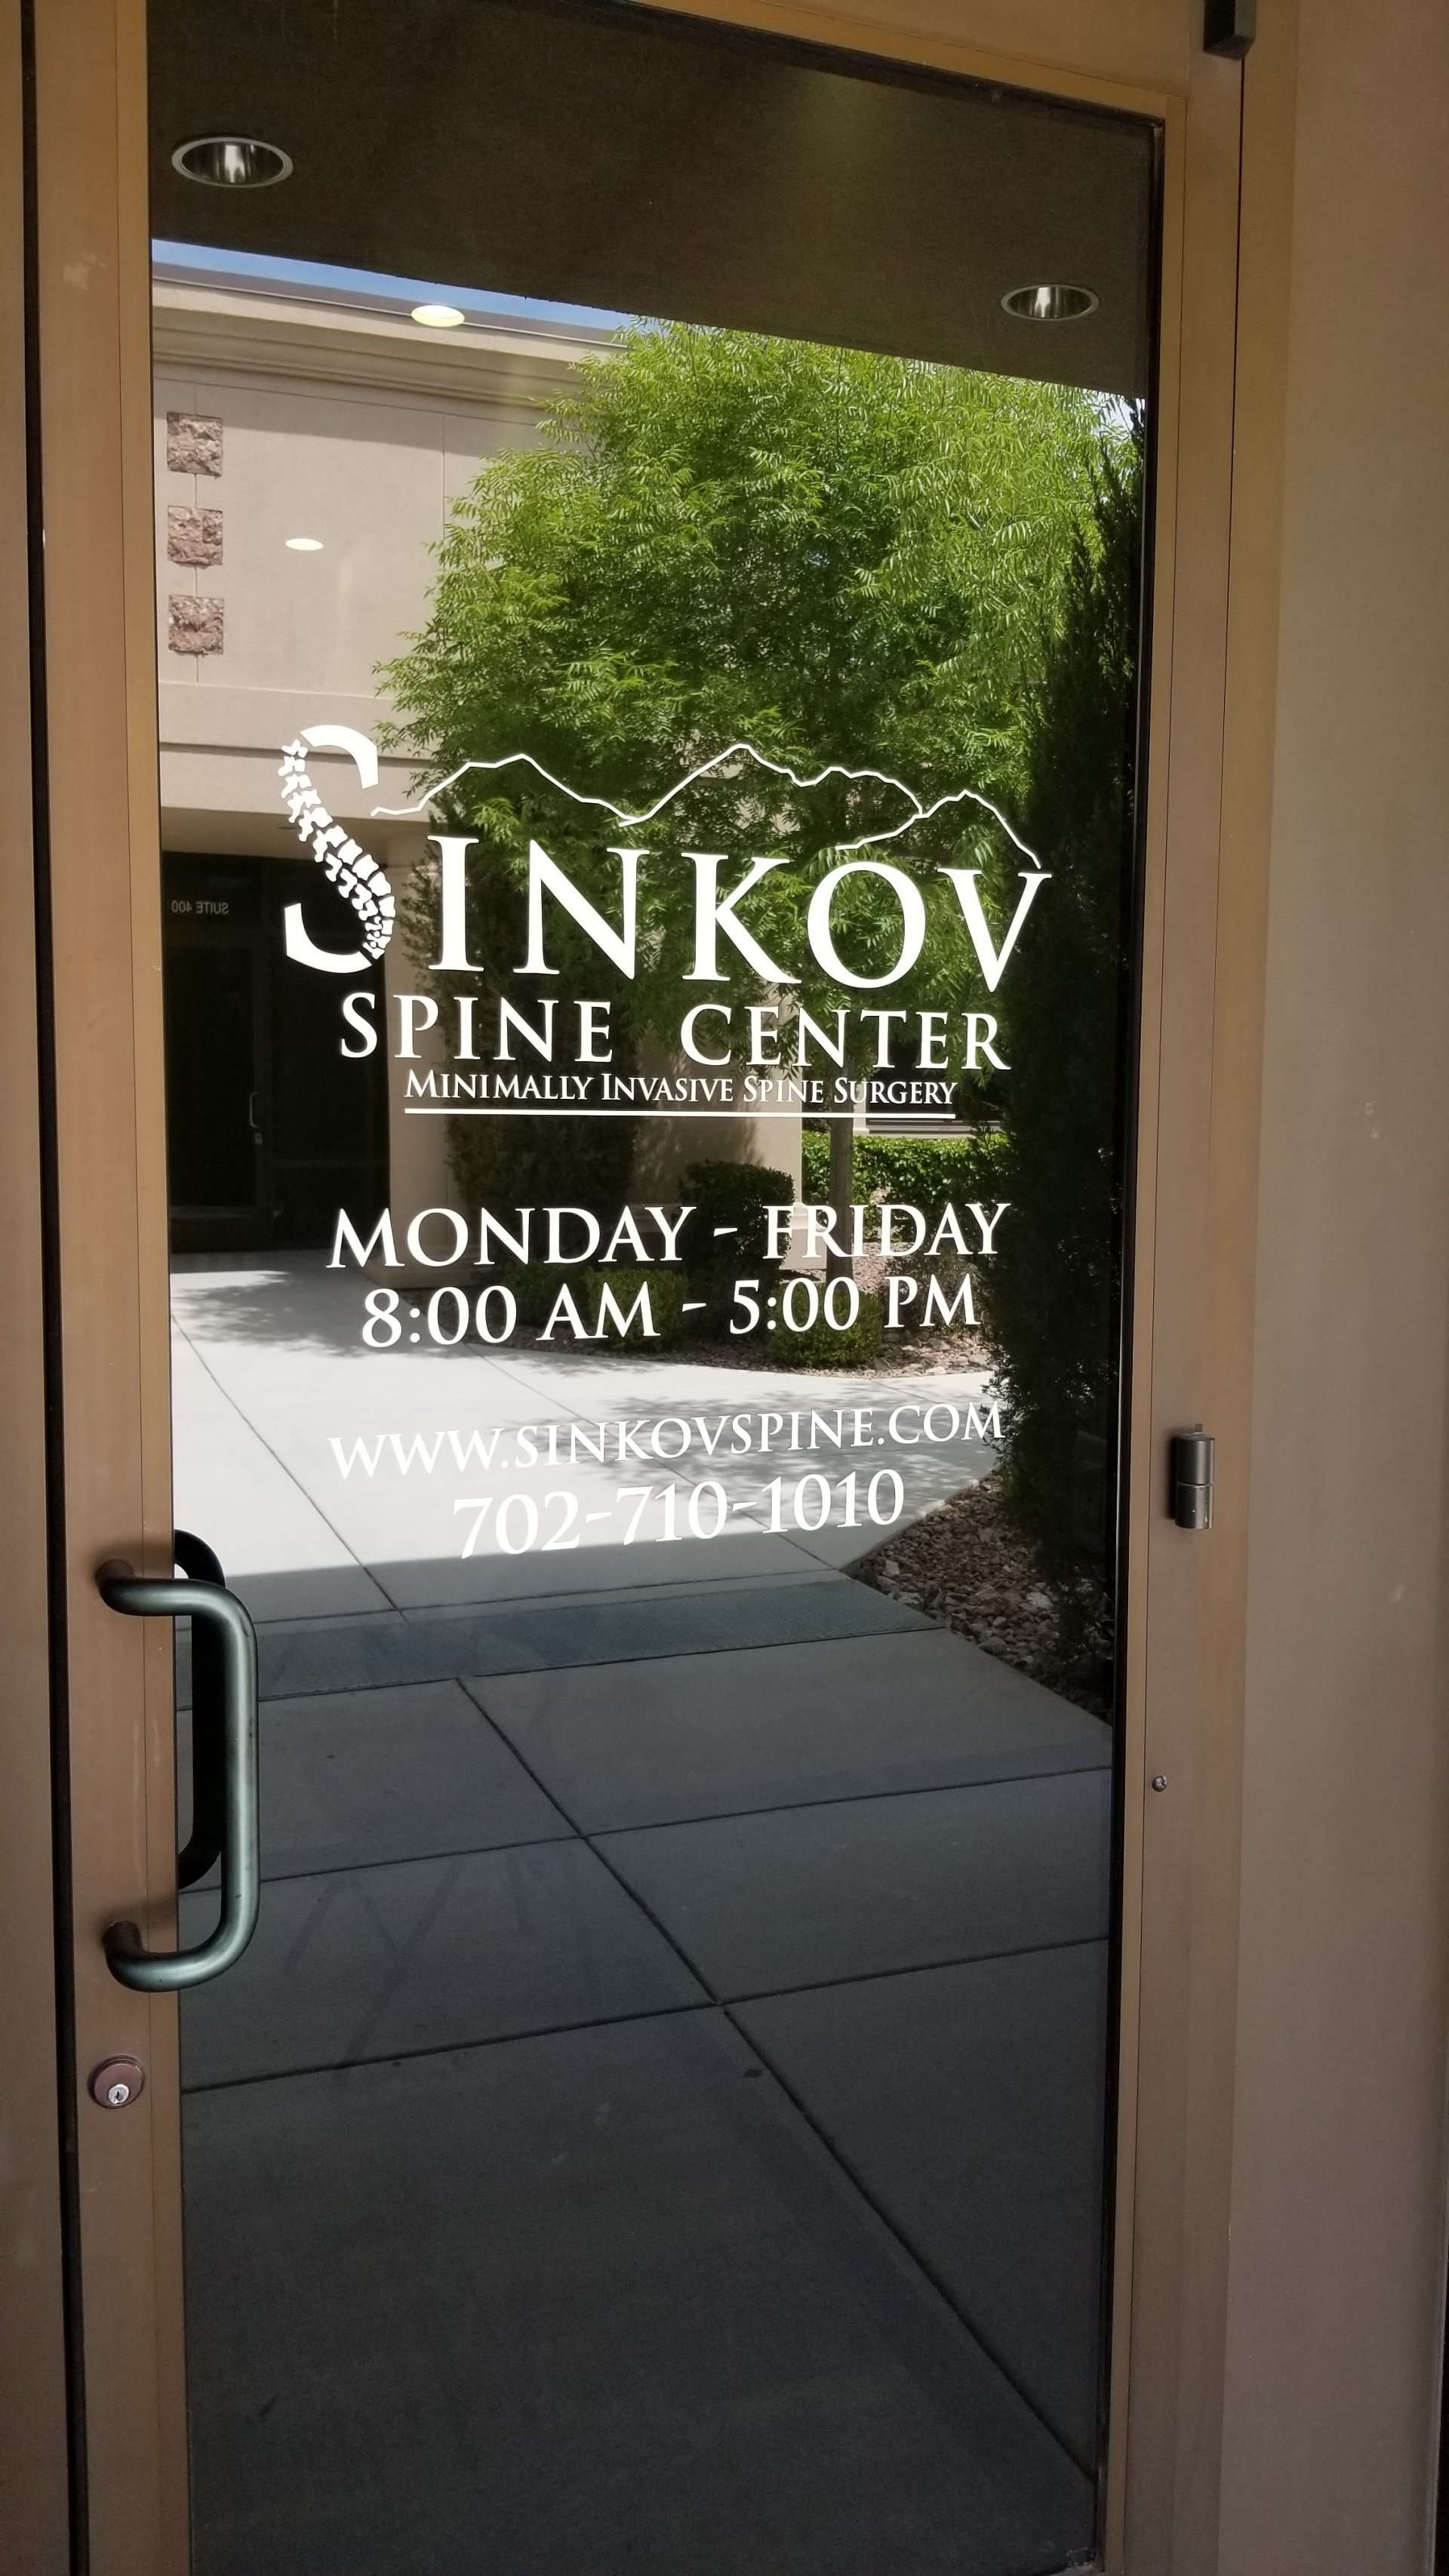 Sinkov spine center door